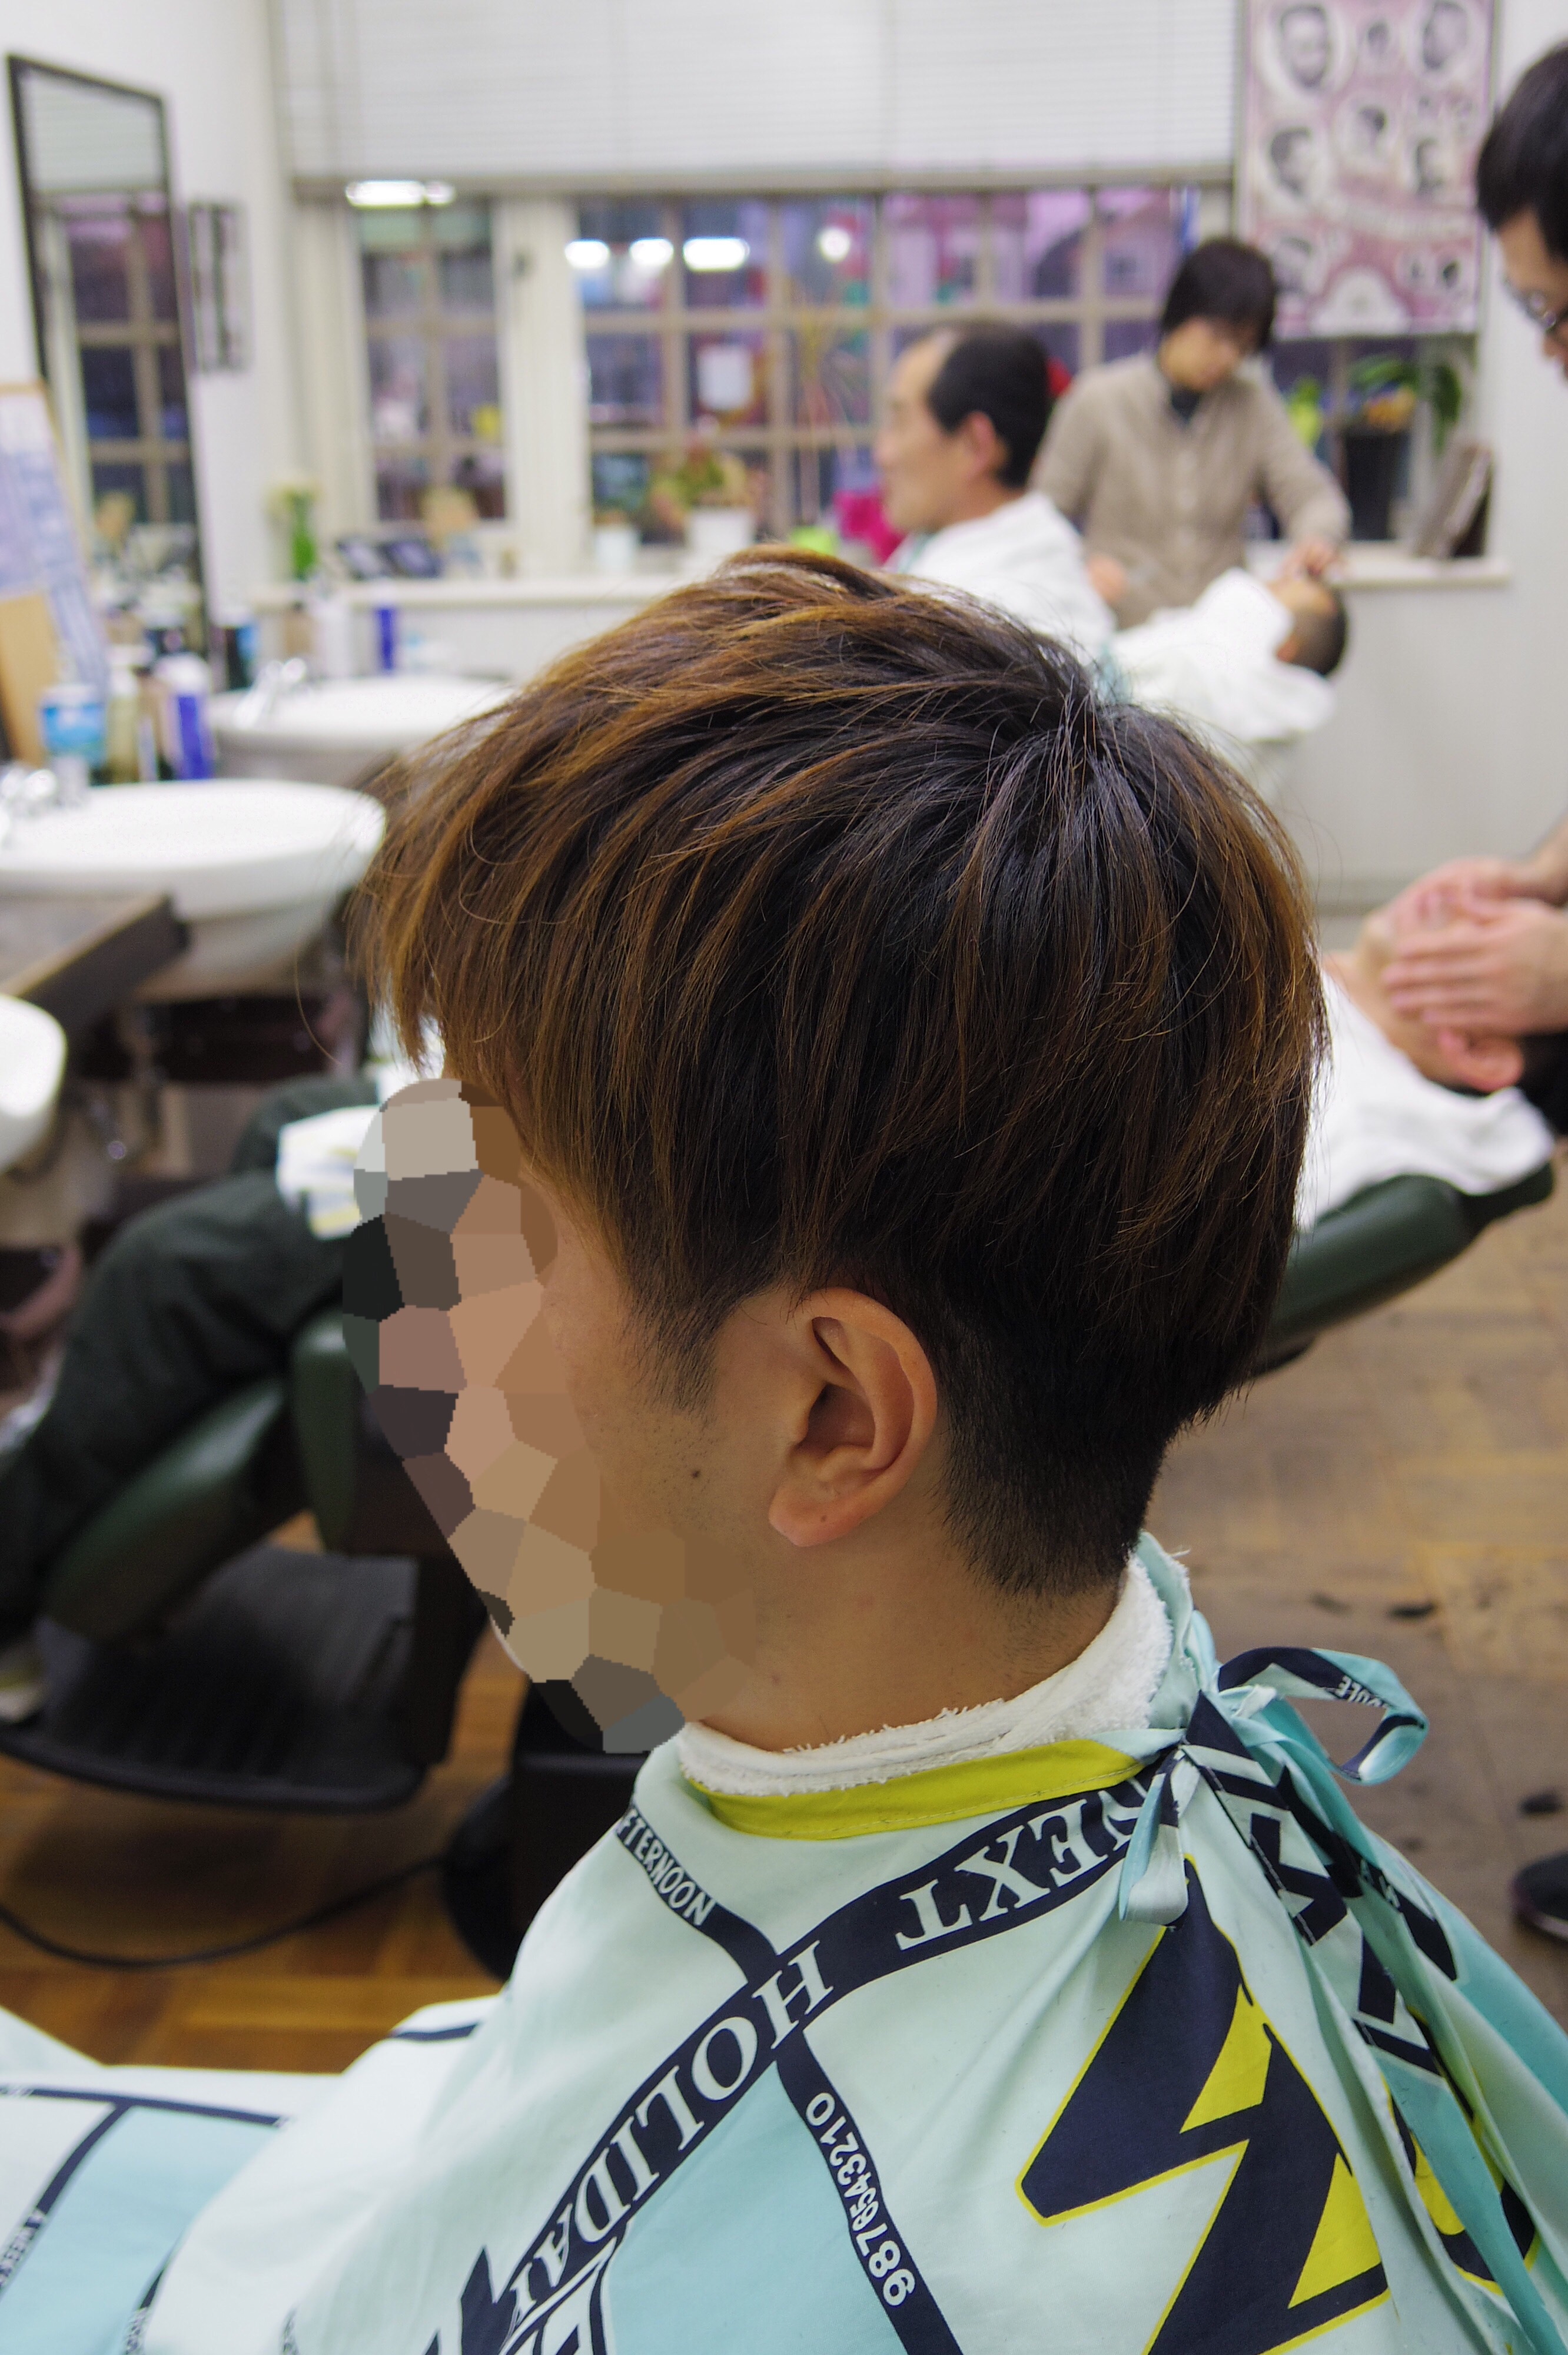 【髪型】くせ毛ツーブロックメンズショート【メンズカットメンズヘア】 府中調布のBARBER「フェードカット、短髪、メンズショートが得意